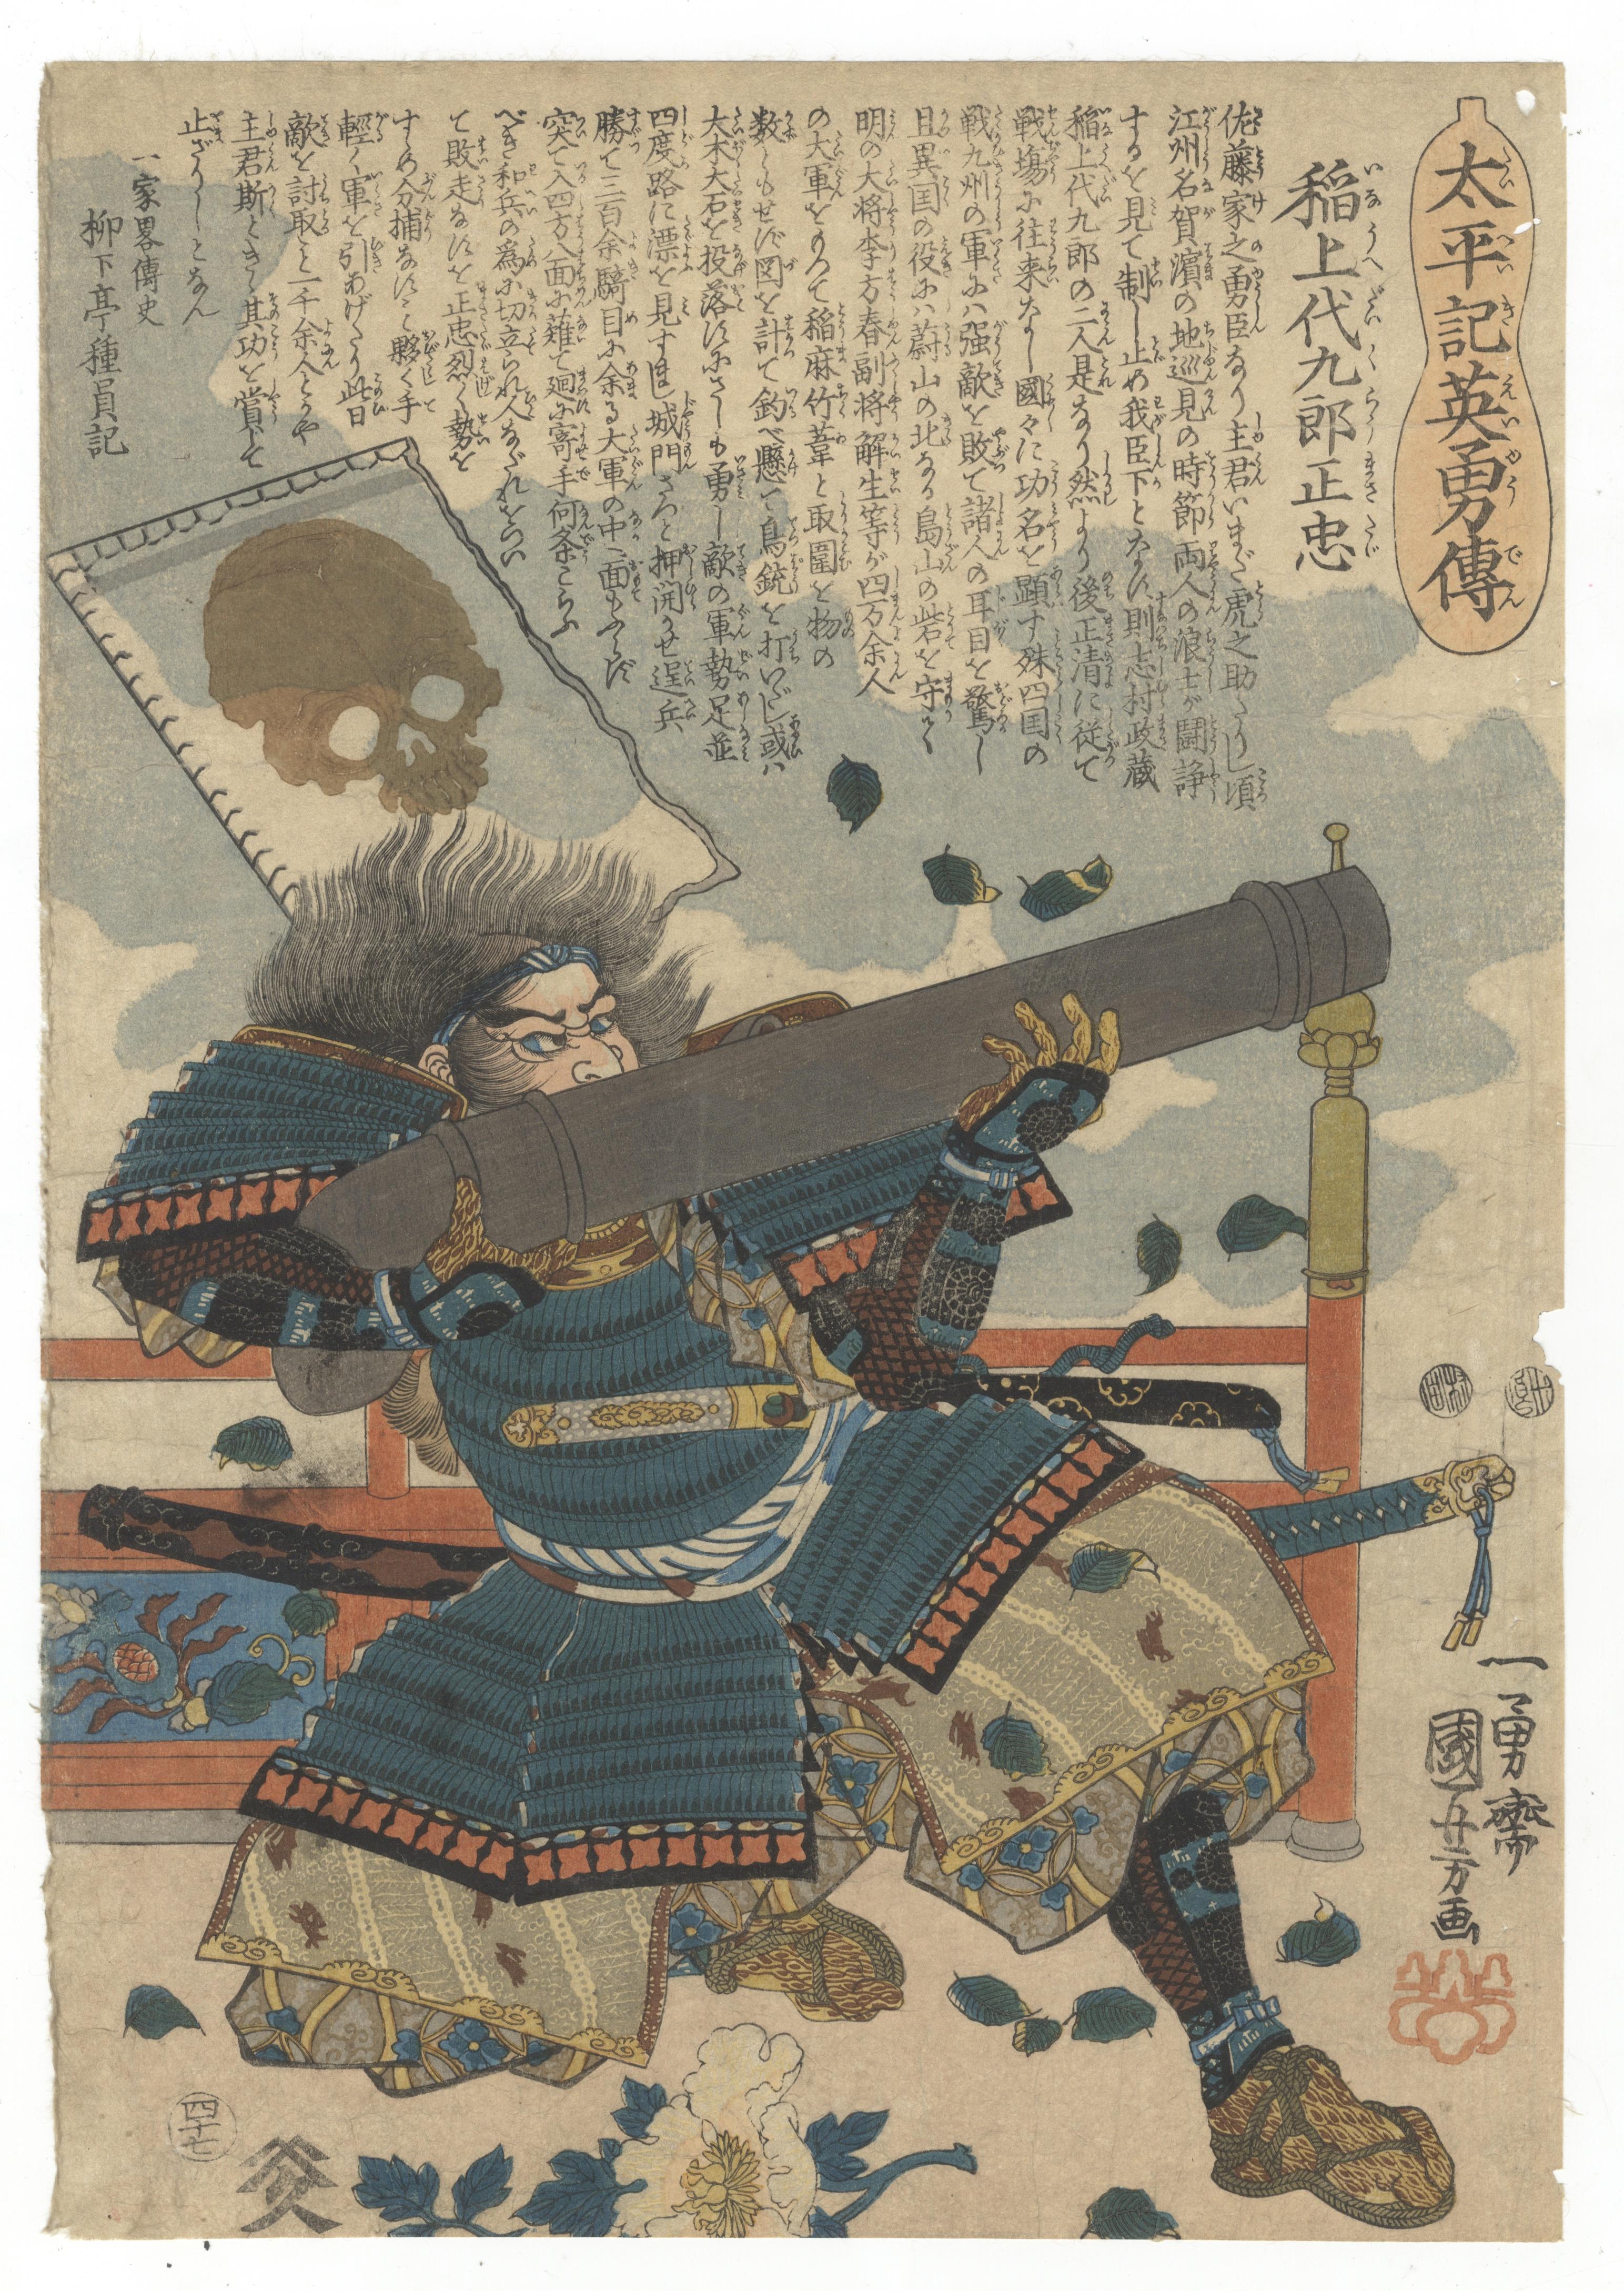 Utagawa Kuniyoshi Portrait Print - Kuniyoshi Utagawa, Samurai, Japanese Woodblock Print, Warfare, Ukiyo-e, Arns